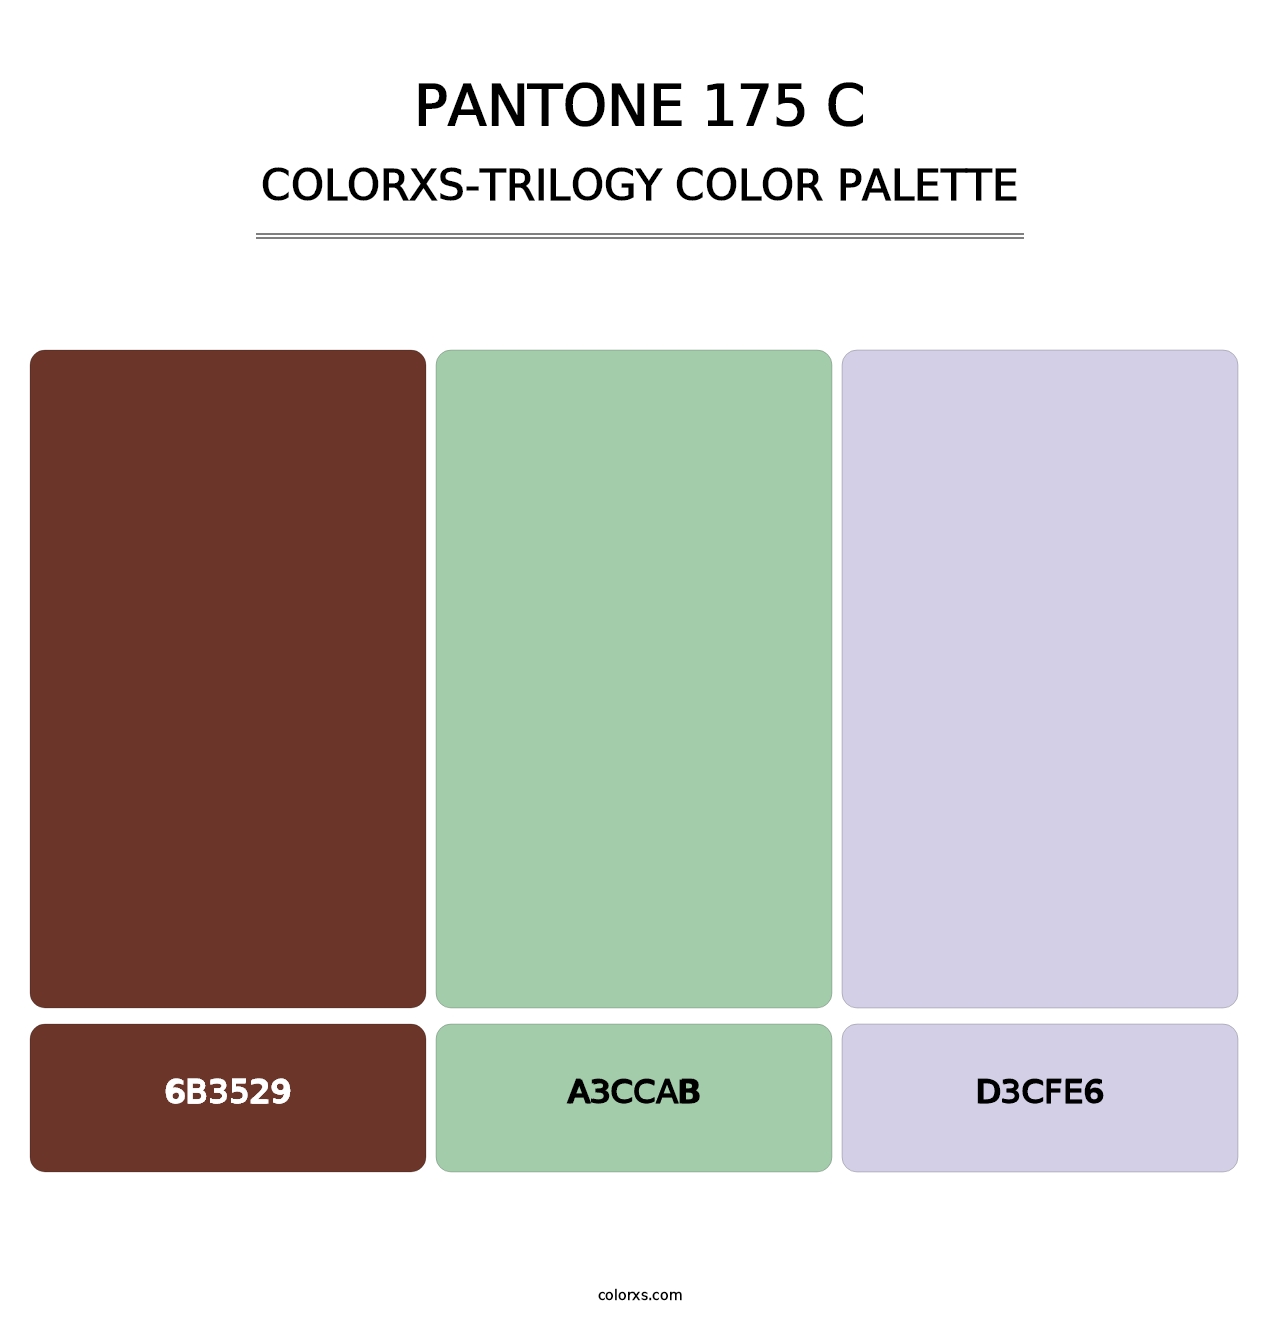 PANTONE 175 C - Colorxs Trilogy Palette